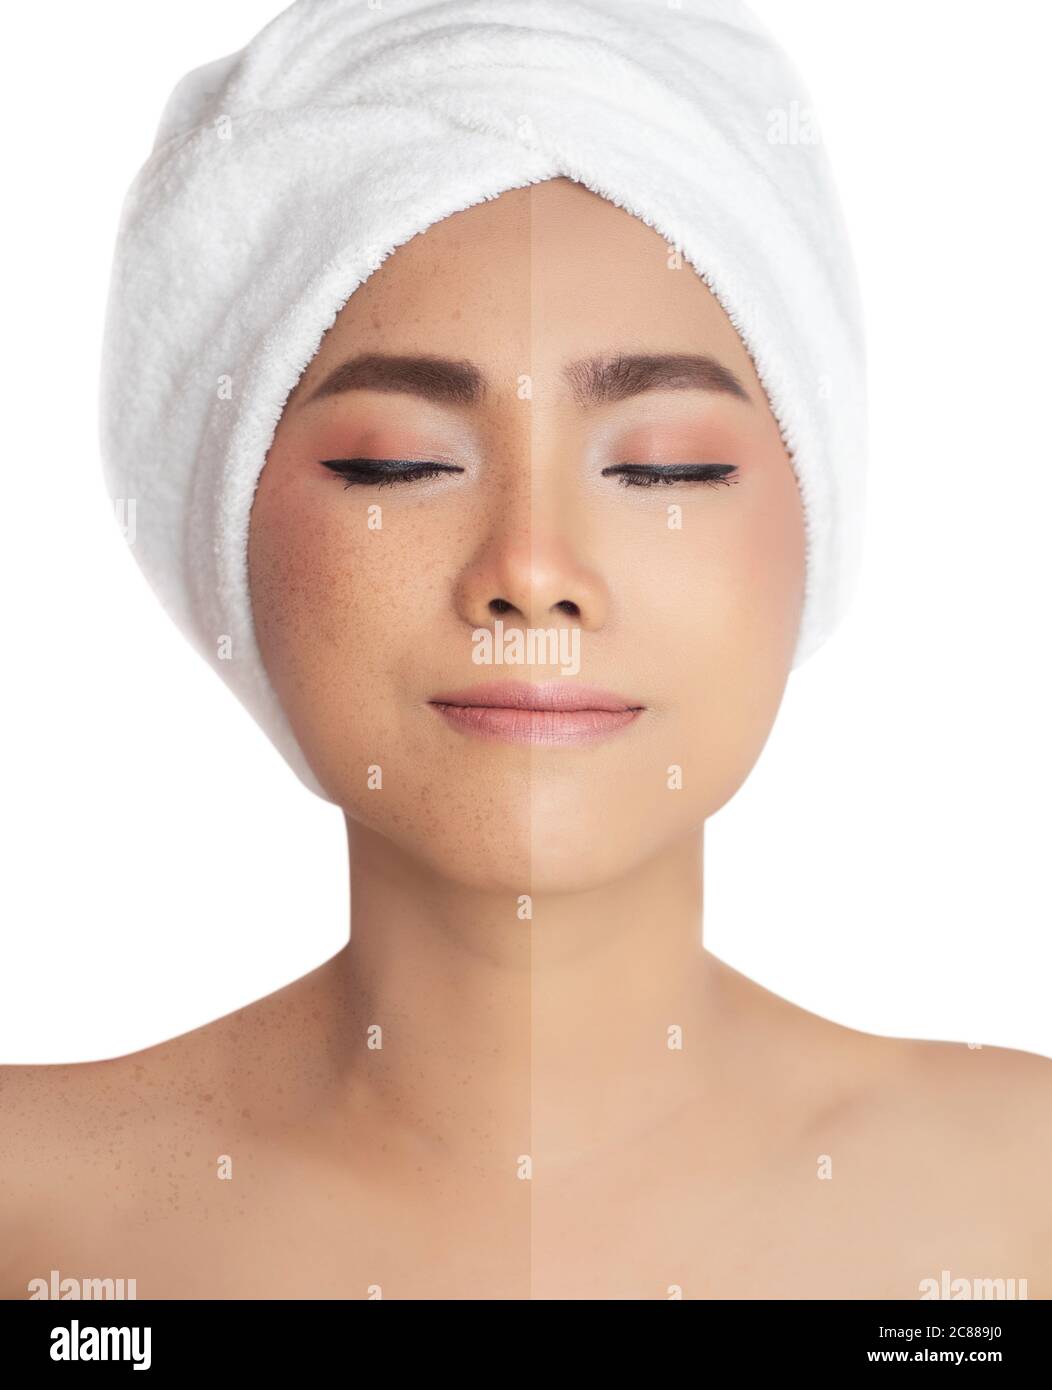 Bilder vor und nach retuschieren Sommersprossen verglichen , Sommersprossen Pigmentfleck Entfernen und Heilung vor und nach der Laserbehandlung auf asiatische Frau Gesicht Stockfoto